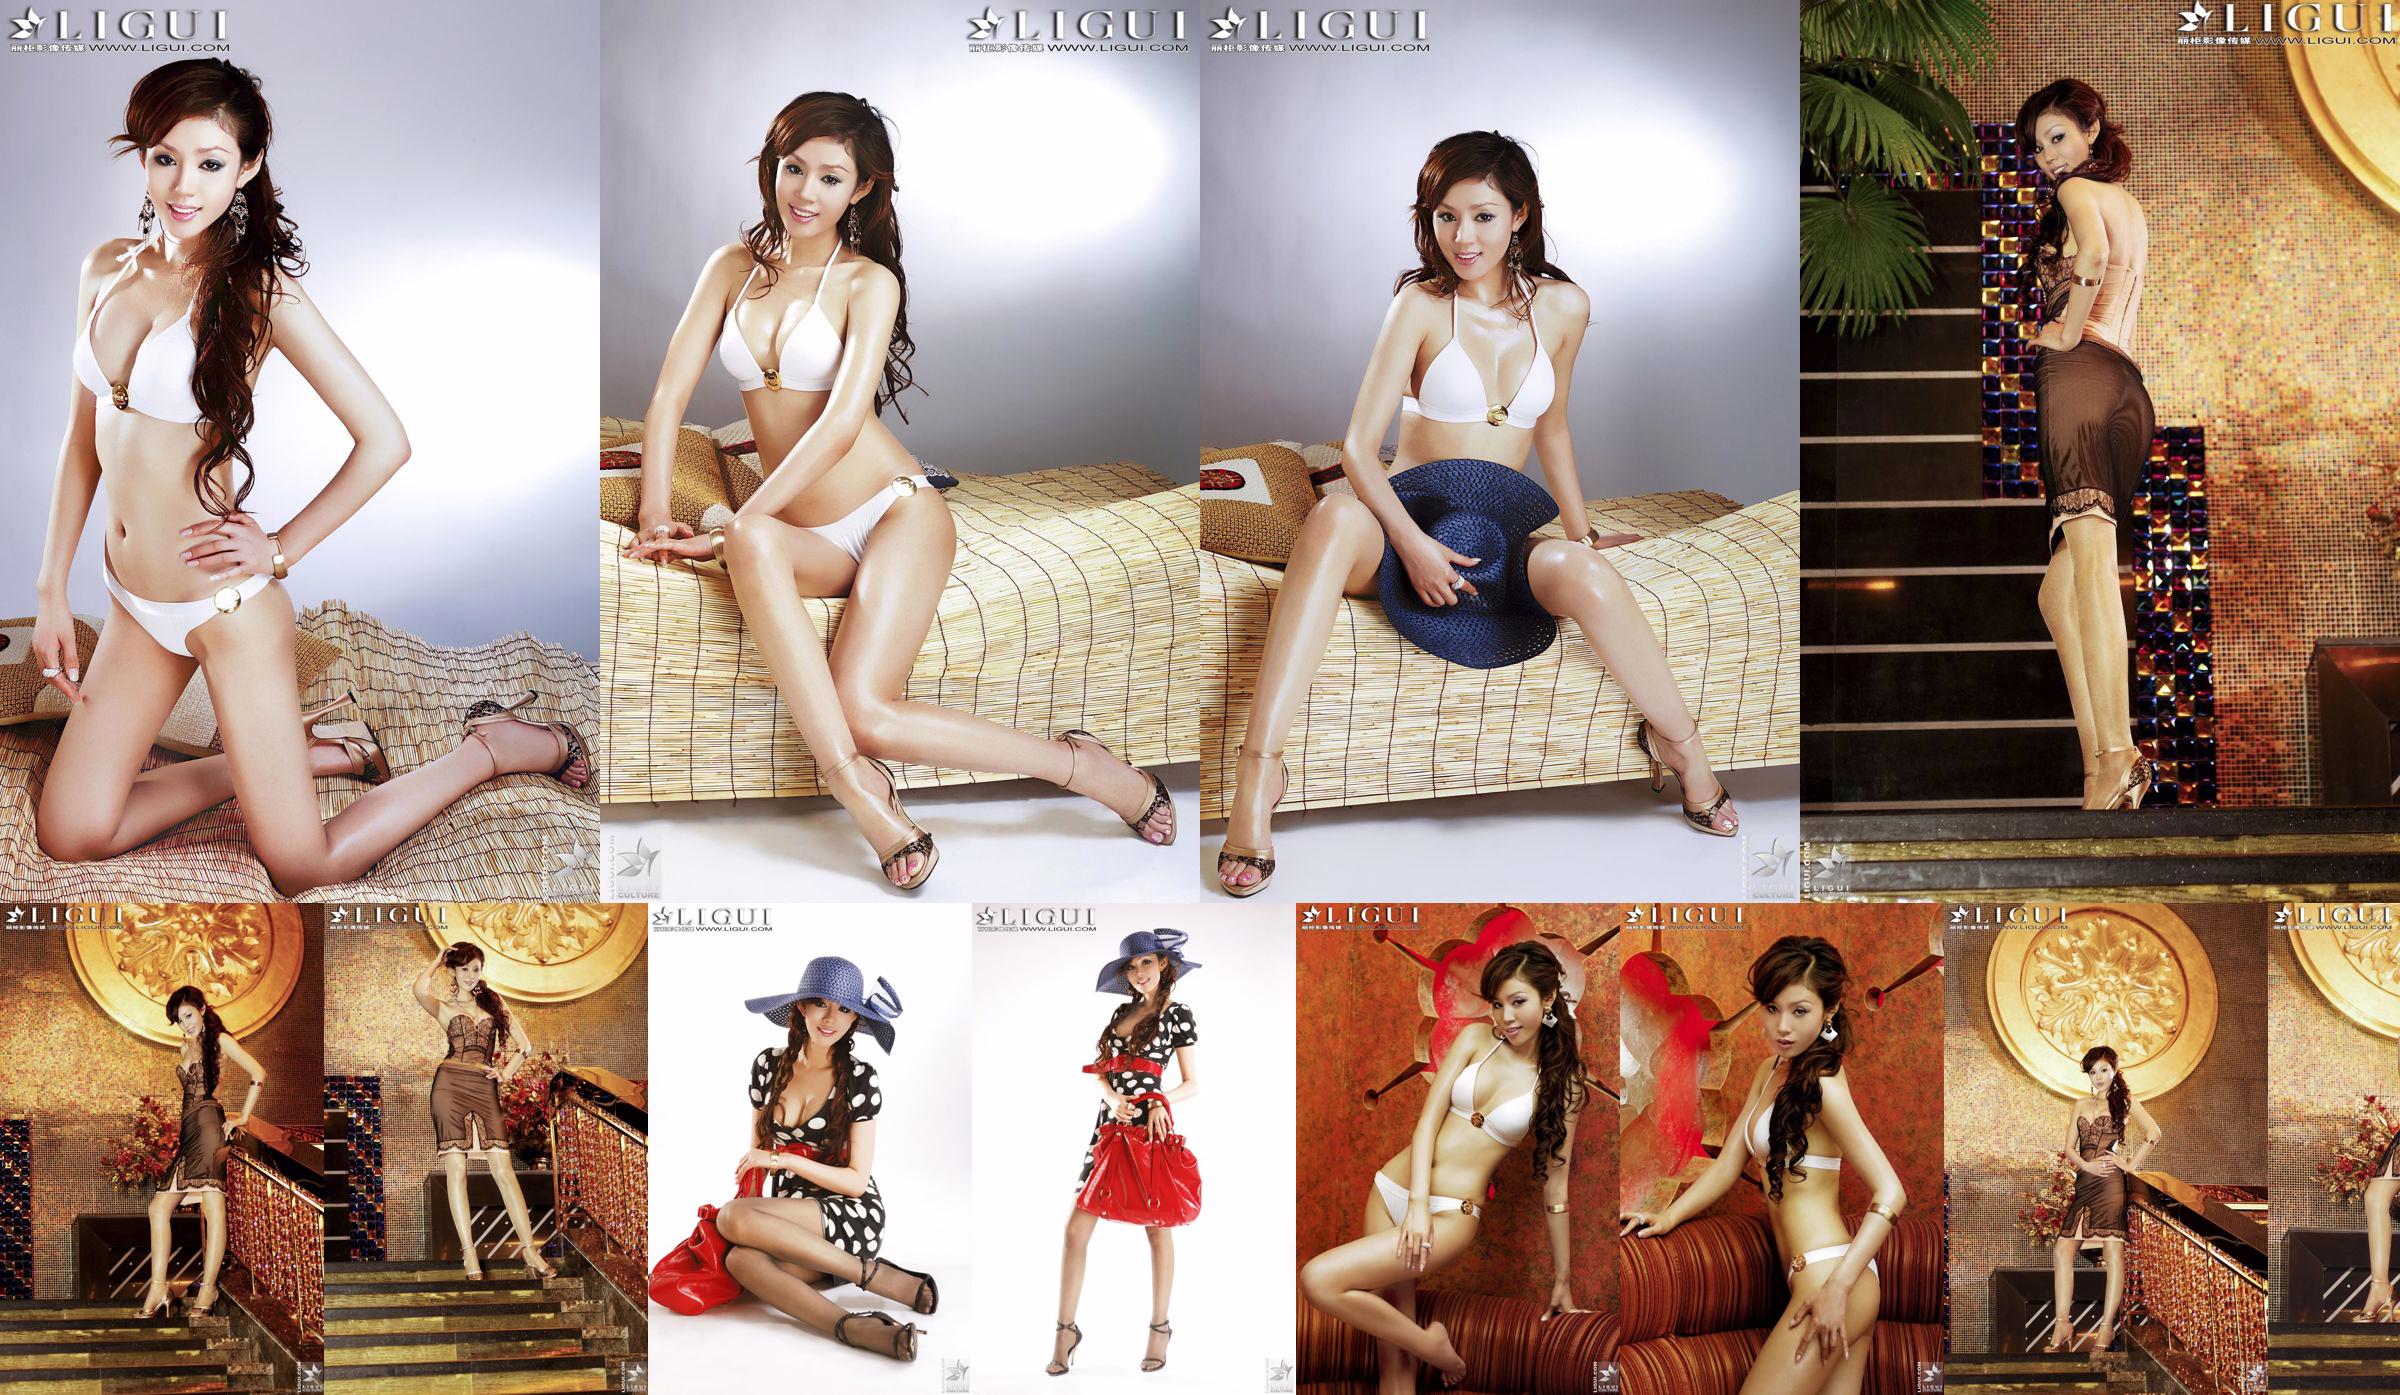 [丽 柜 LiGui] Model Yao Jinjins "Bikini + Kleid" Schöne Beine und seidige Füße Foto Bild No.7450de Seite 4